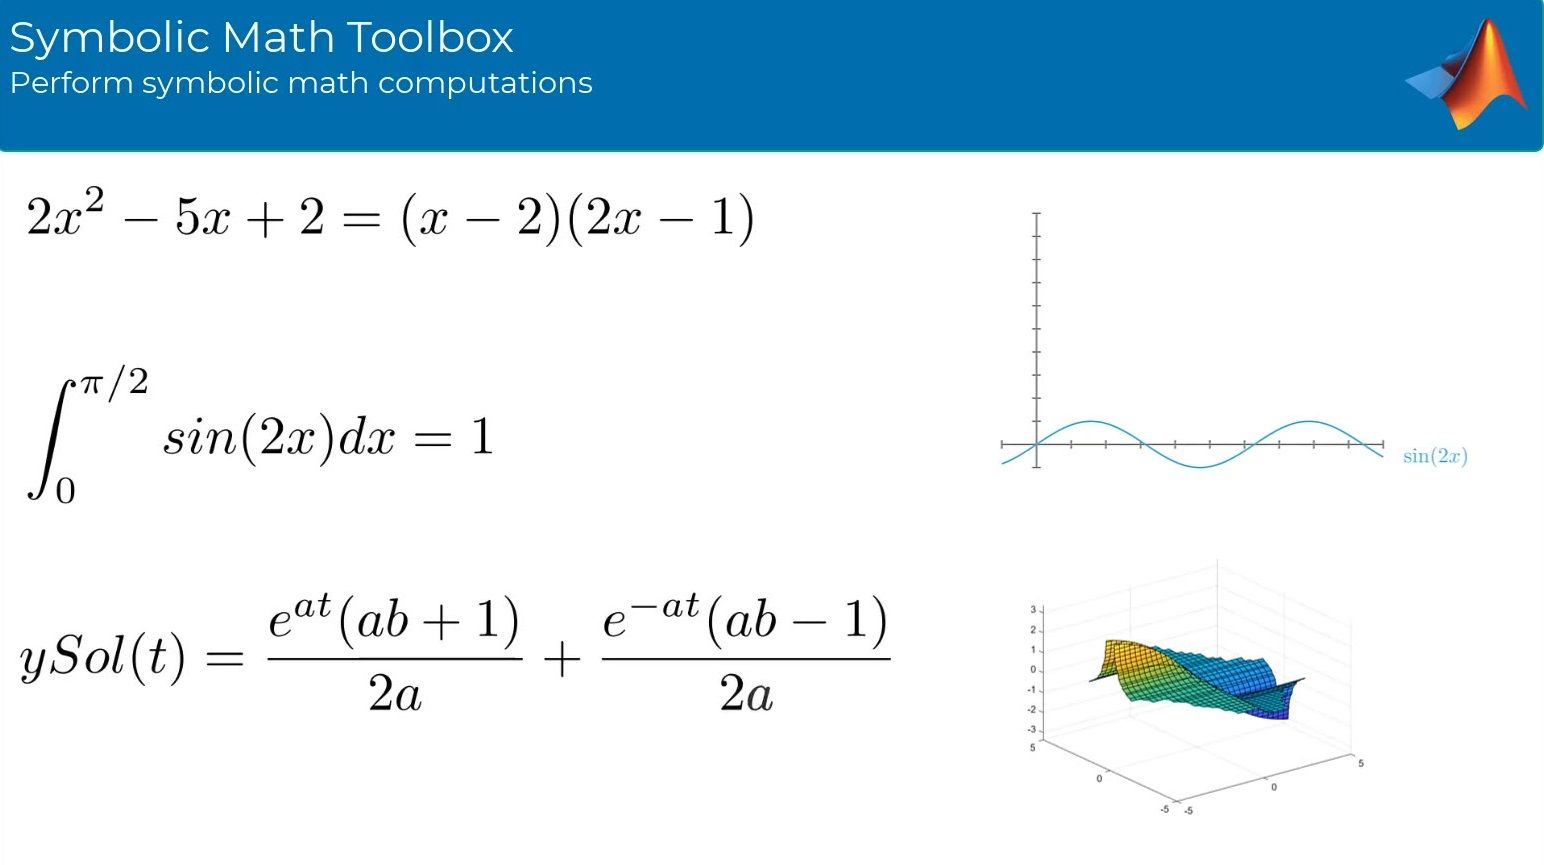 使用符号数学工具箱™执行符号数学计算。工具箱提供了用于求解、绘制和操作符号数学方程的函数。